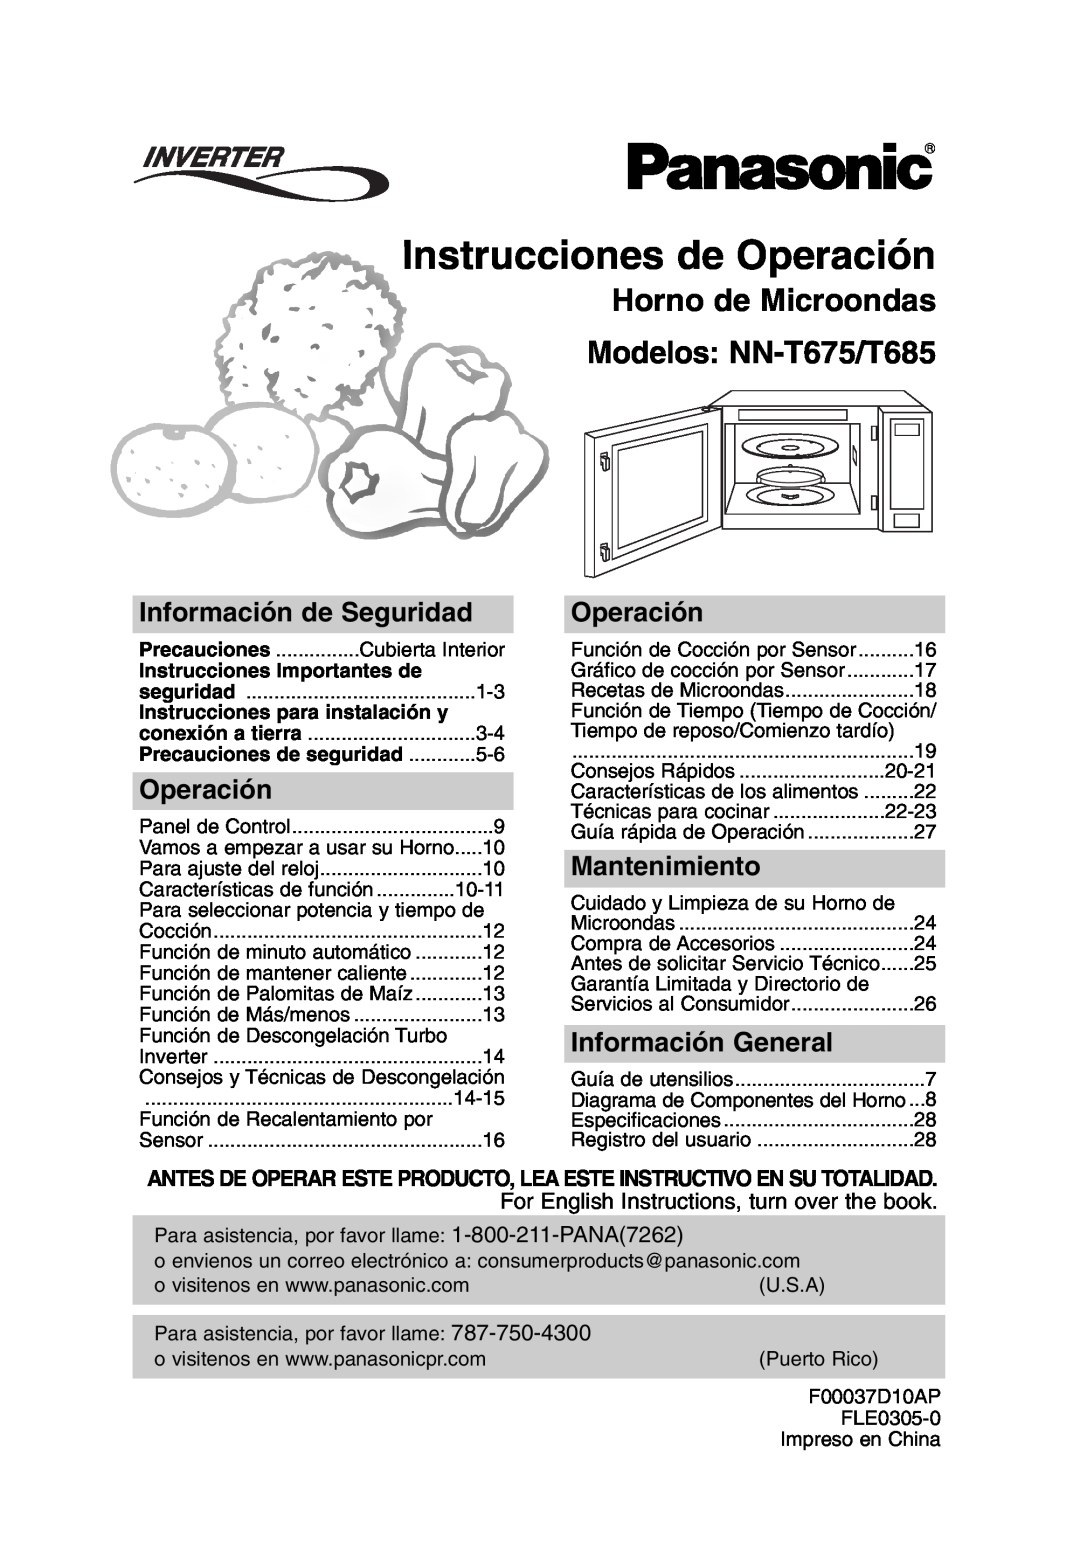 Panasonic NN-T685 Instrucciones de Operación, Horno de Microondas Modelos: NN-T675/T685, Información de Seguridad 